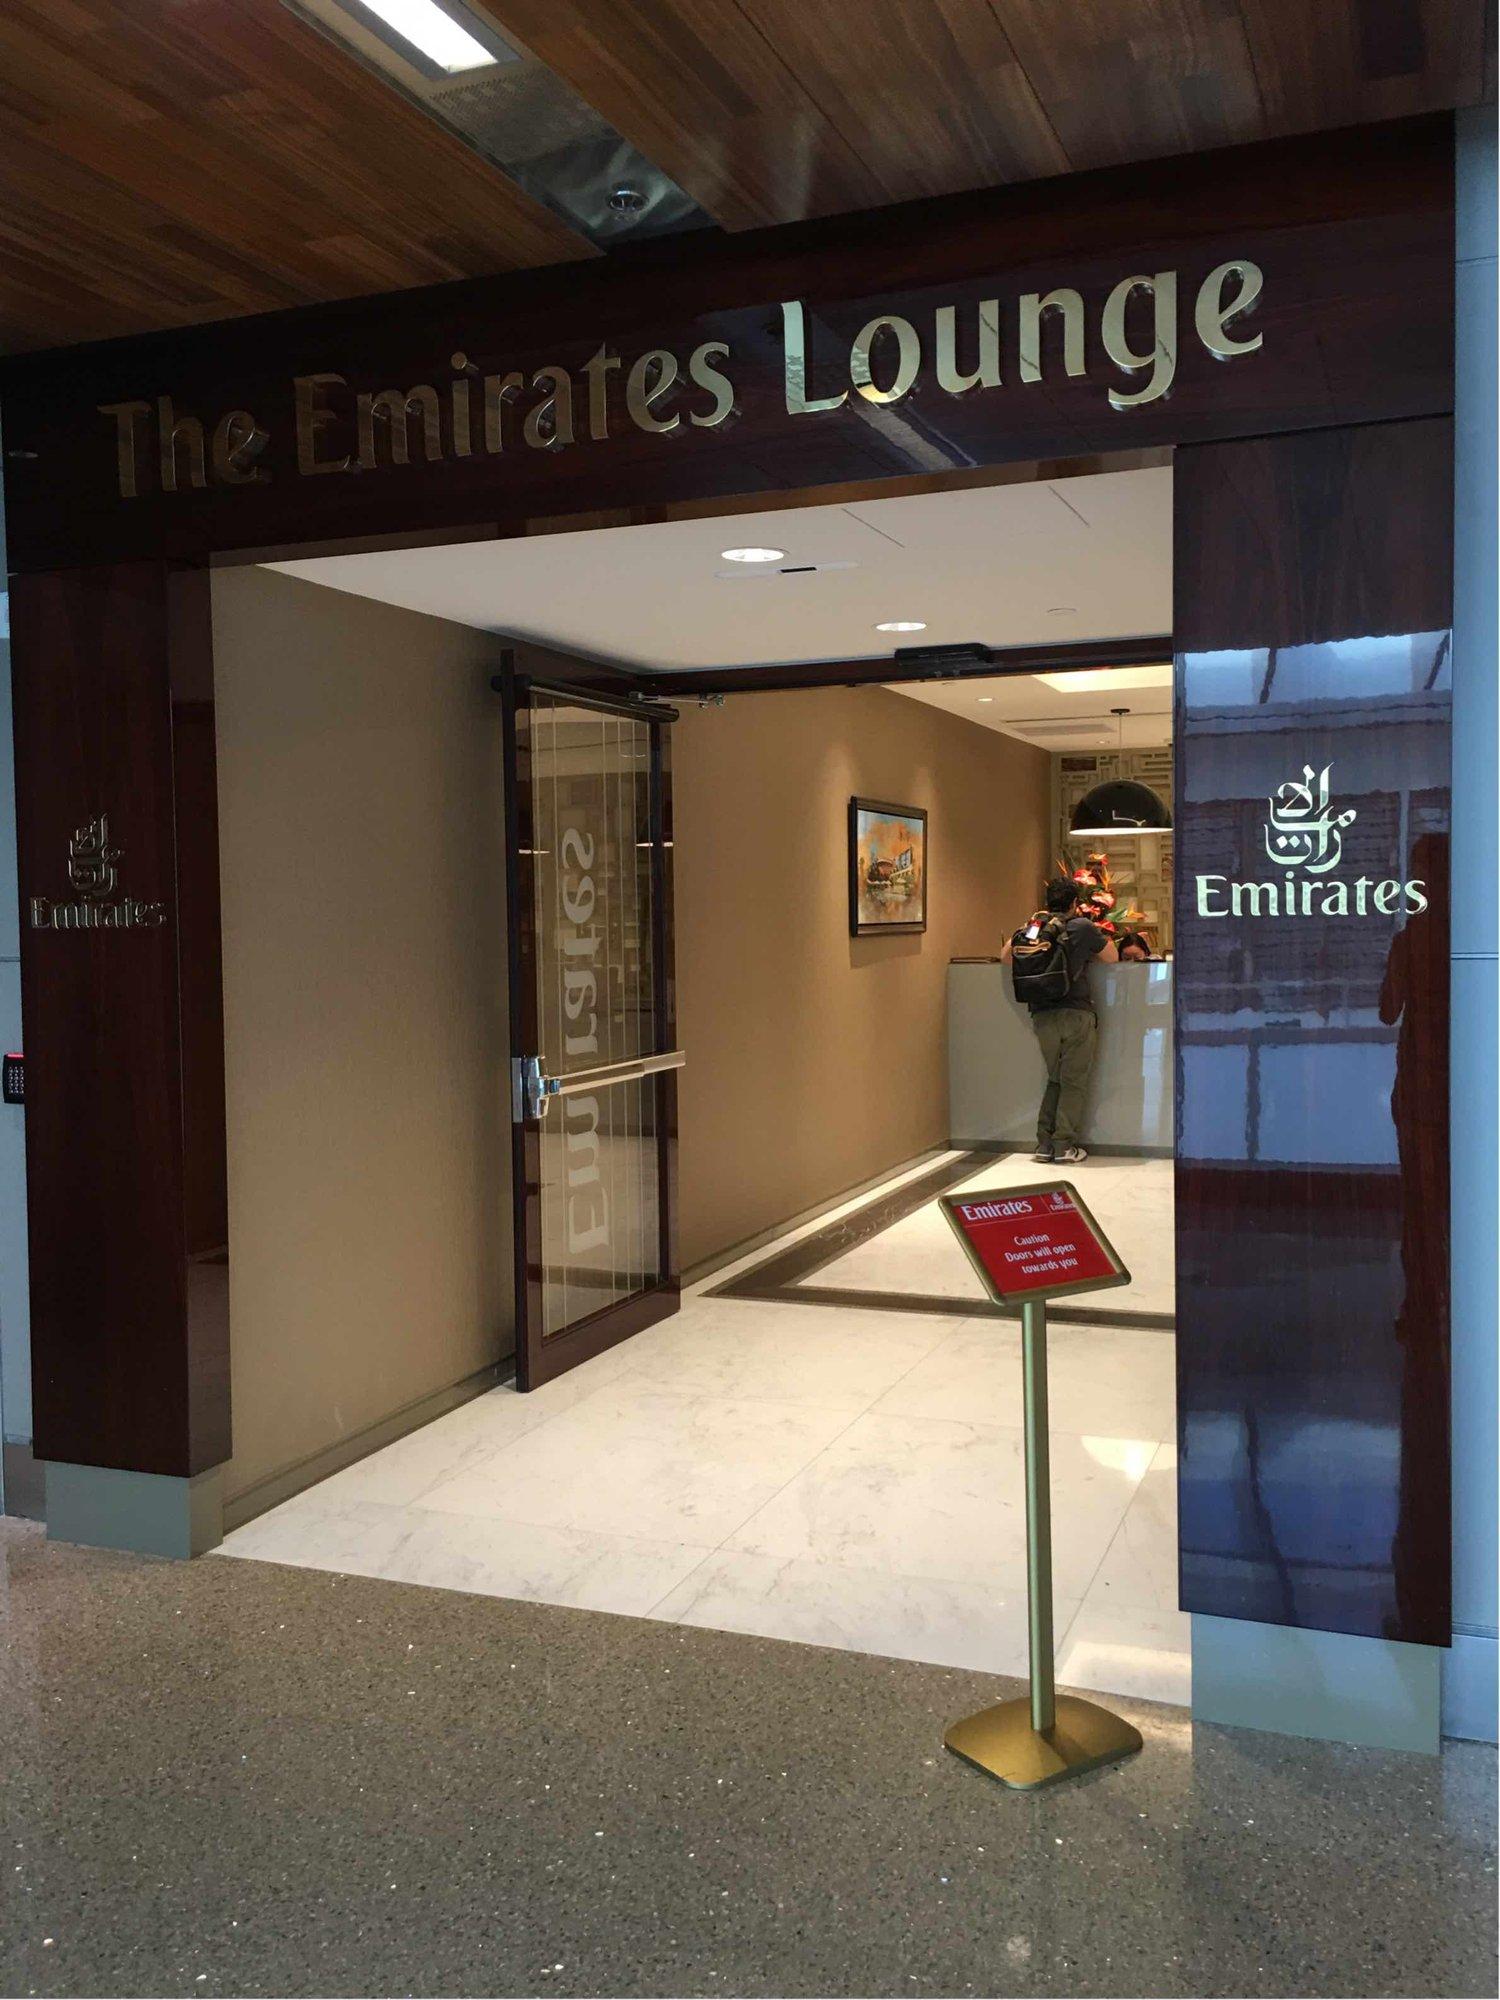 The Emirates Lounge image 6 of 12